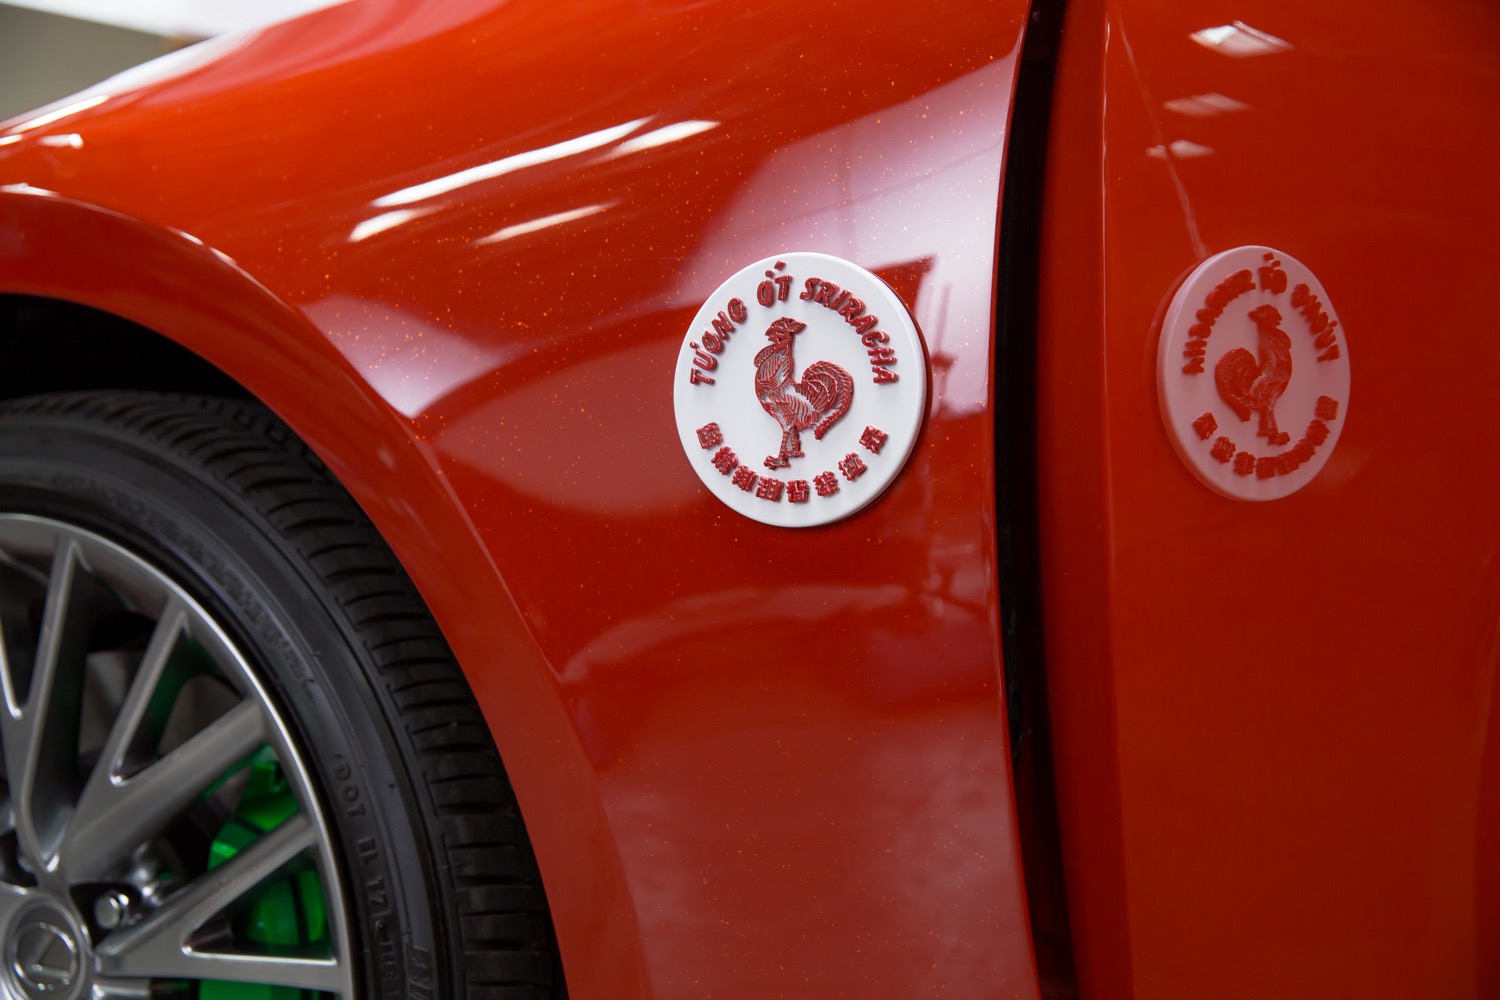 Lexus Sriracha IS